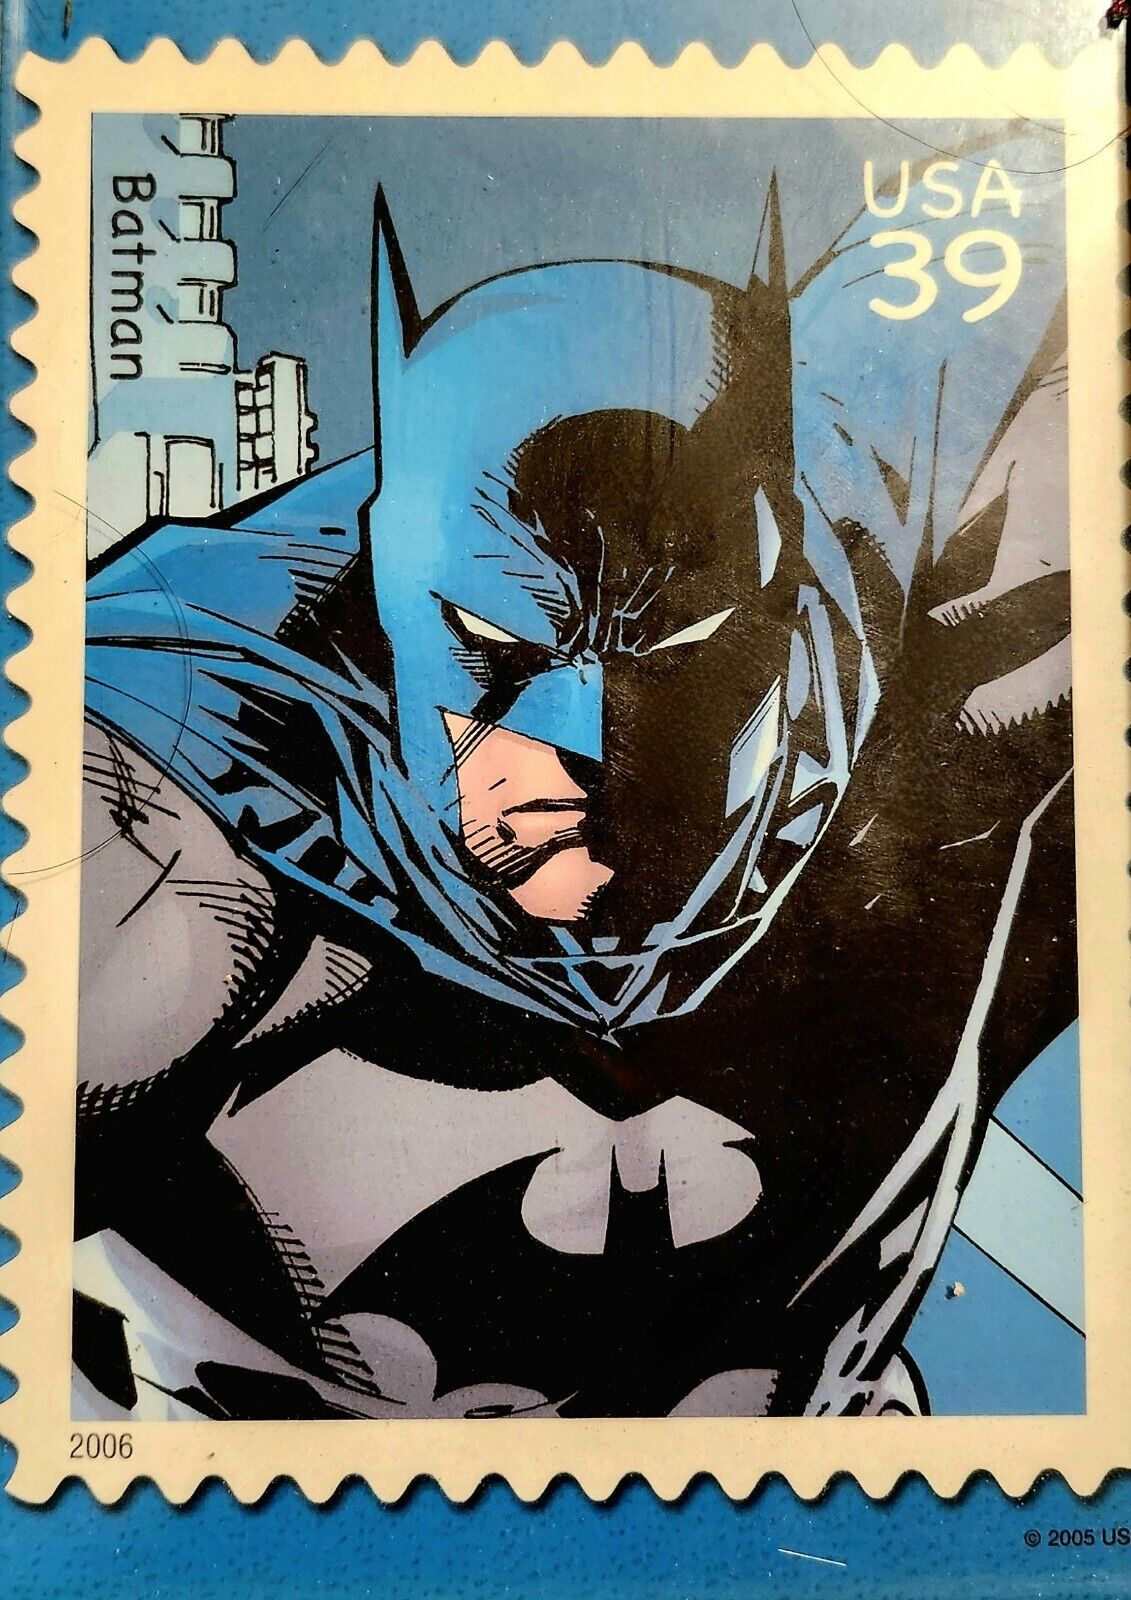 Retro DC Comics Superhero Collectible Stamp Art (Batman, Superman, Aquaman ..)